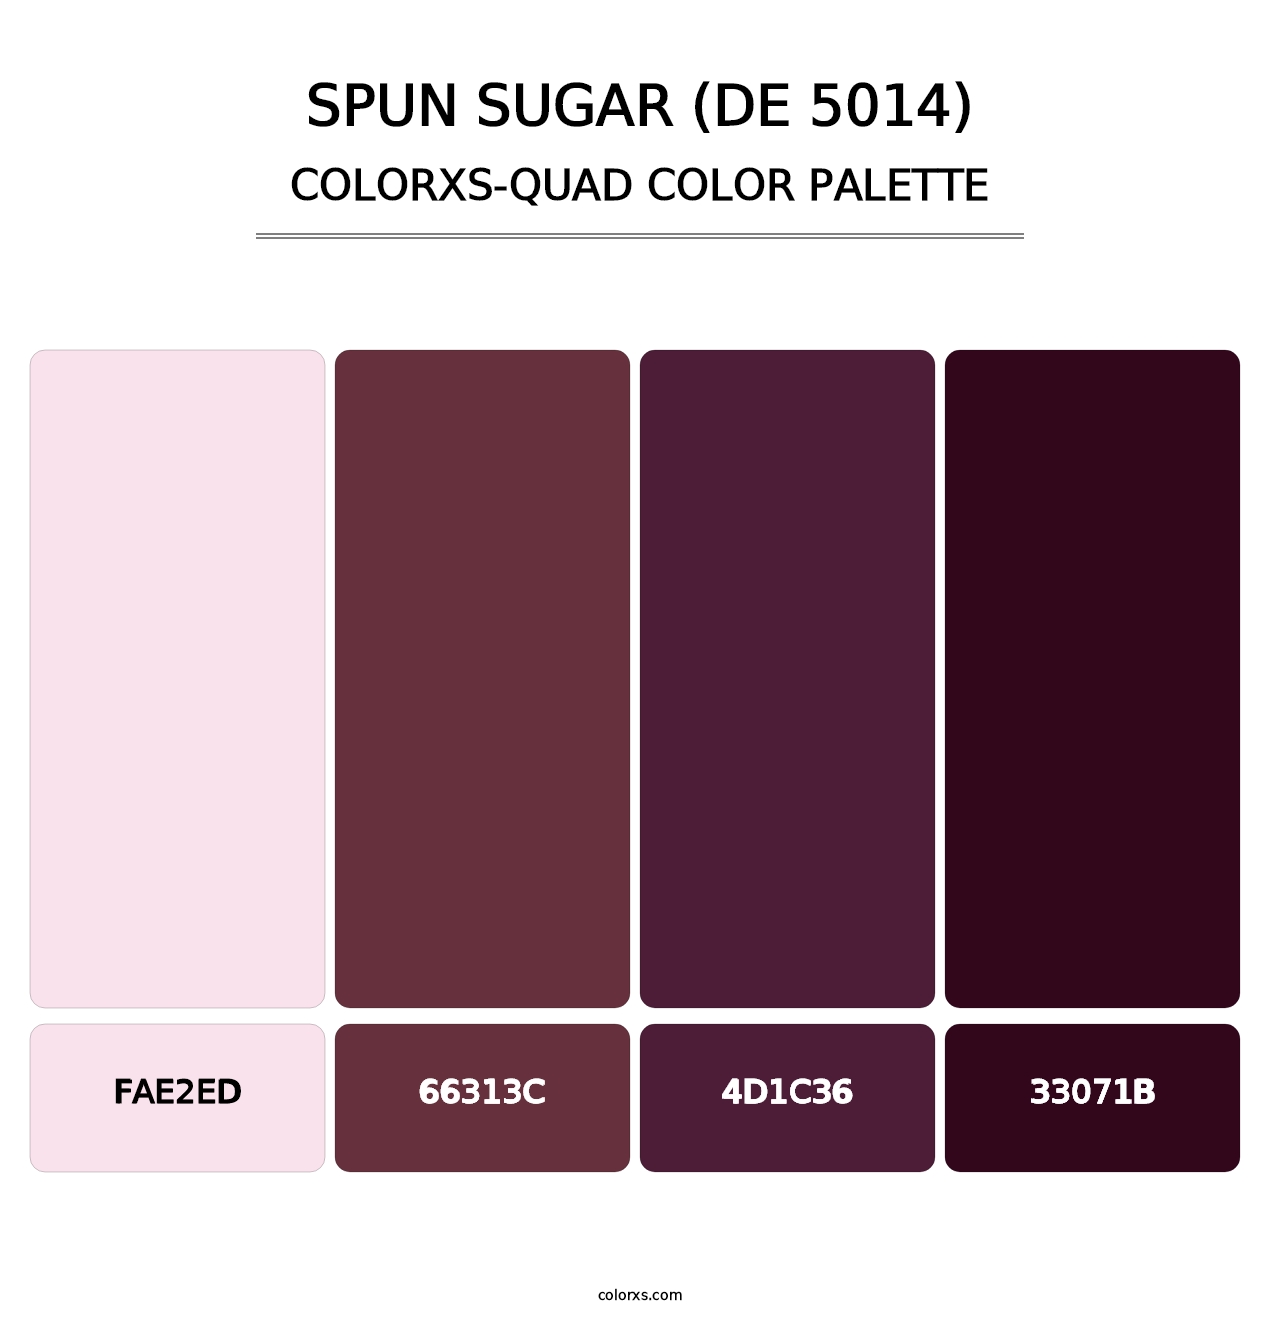 Spun Sugar (DE 5014) - Colorxs Quad Palette